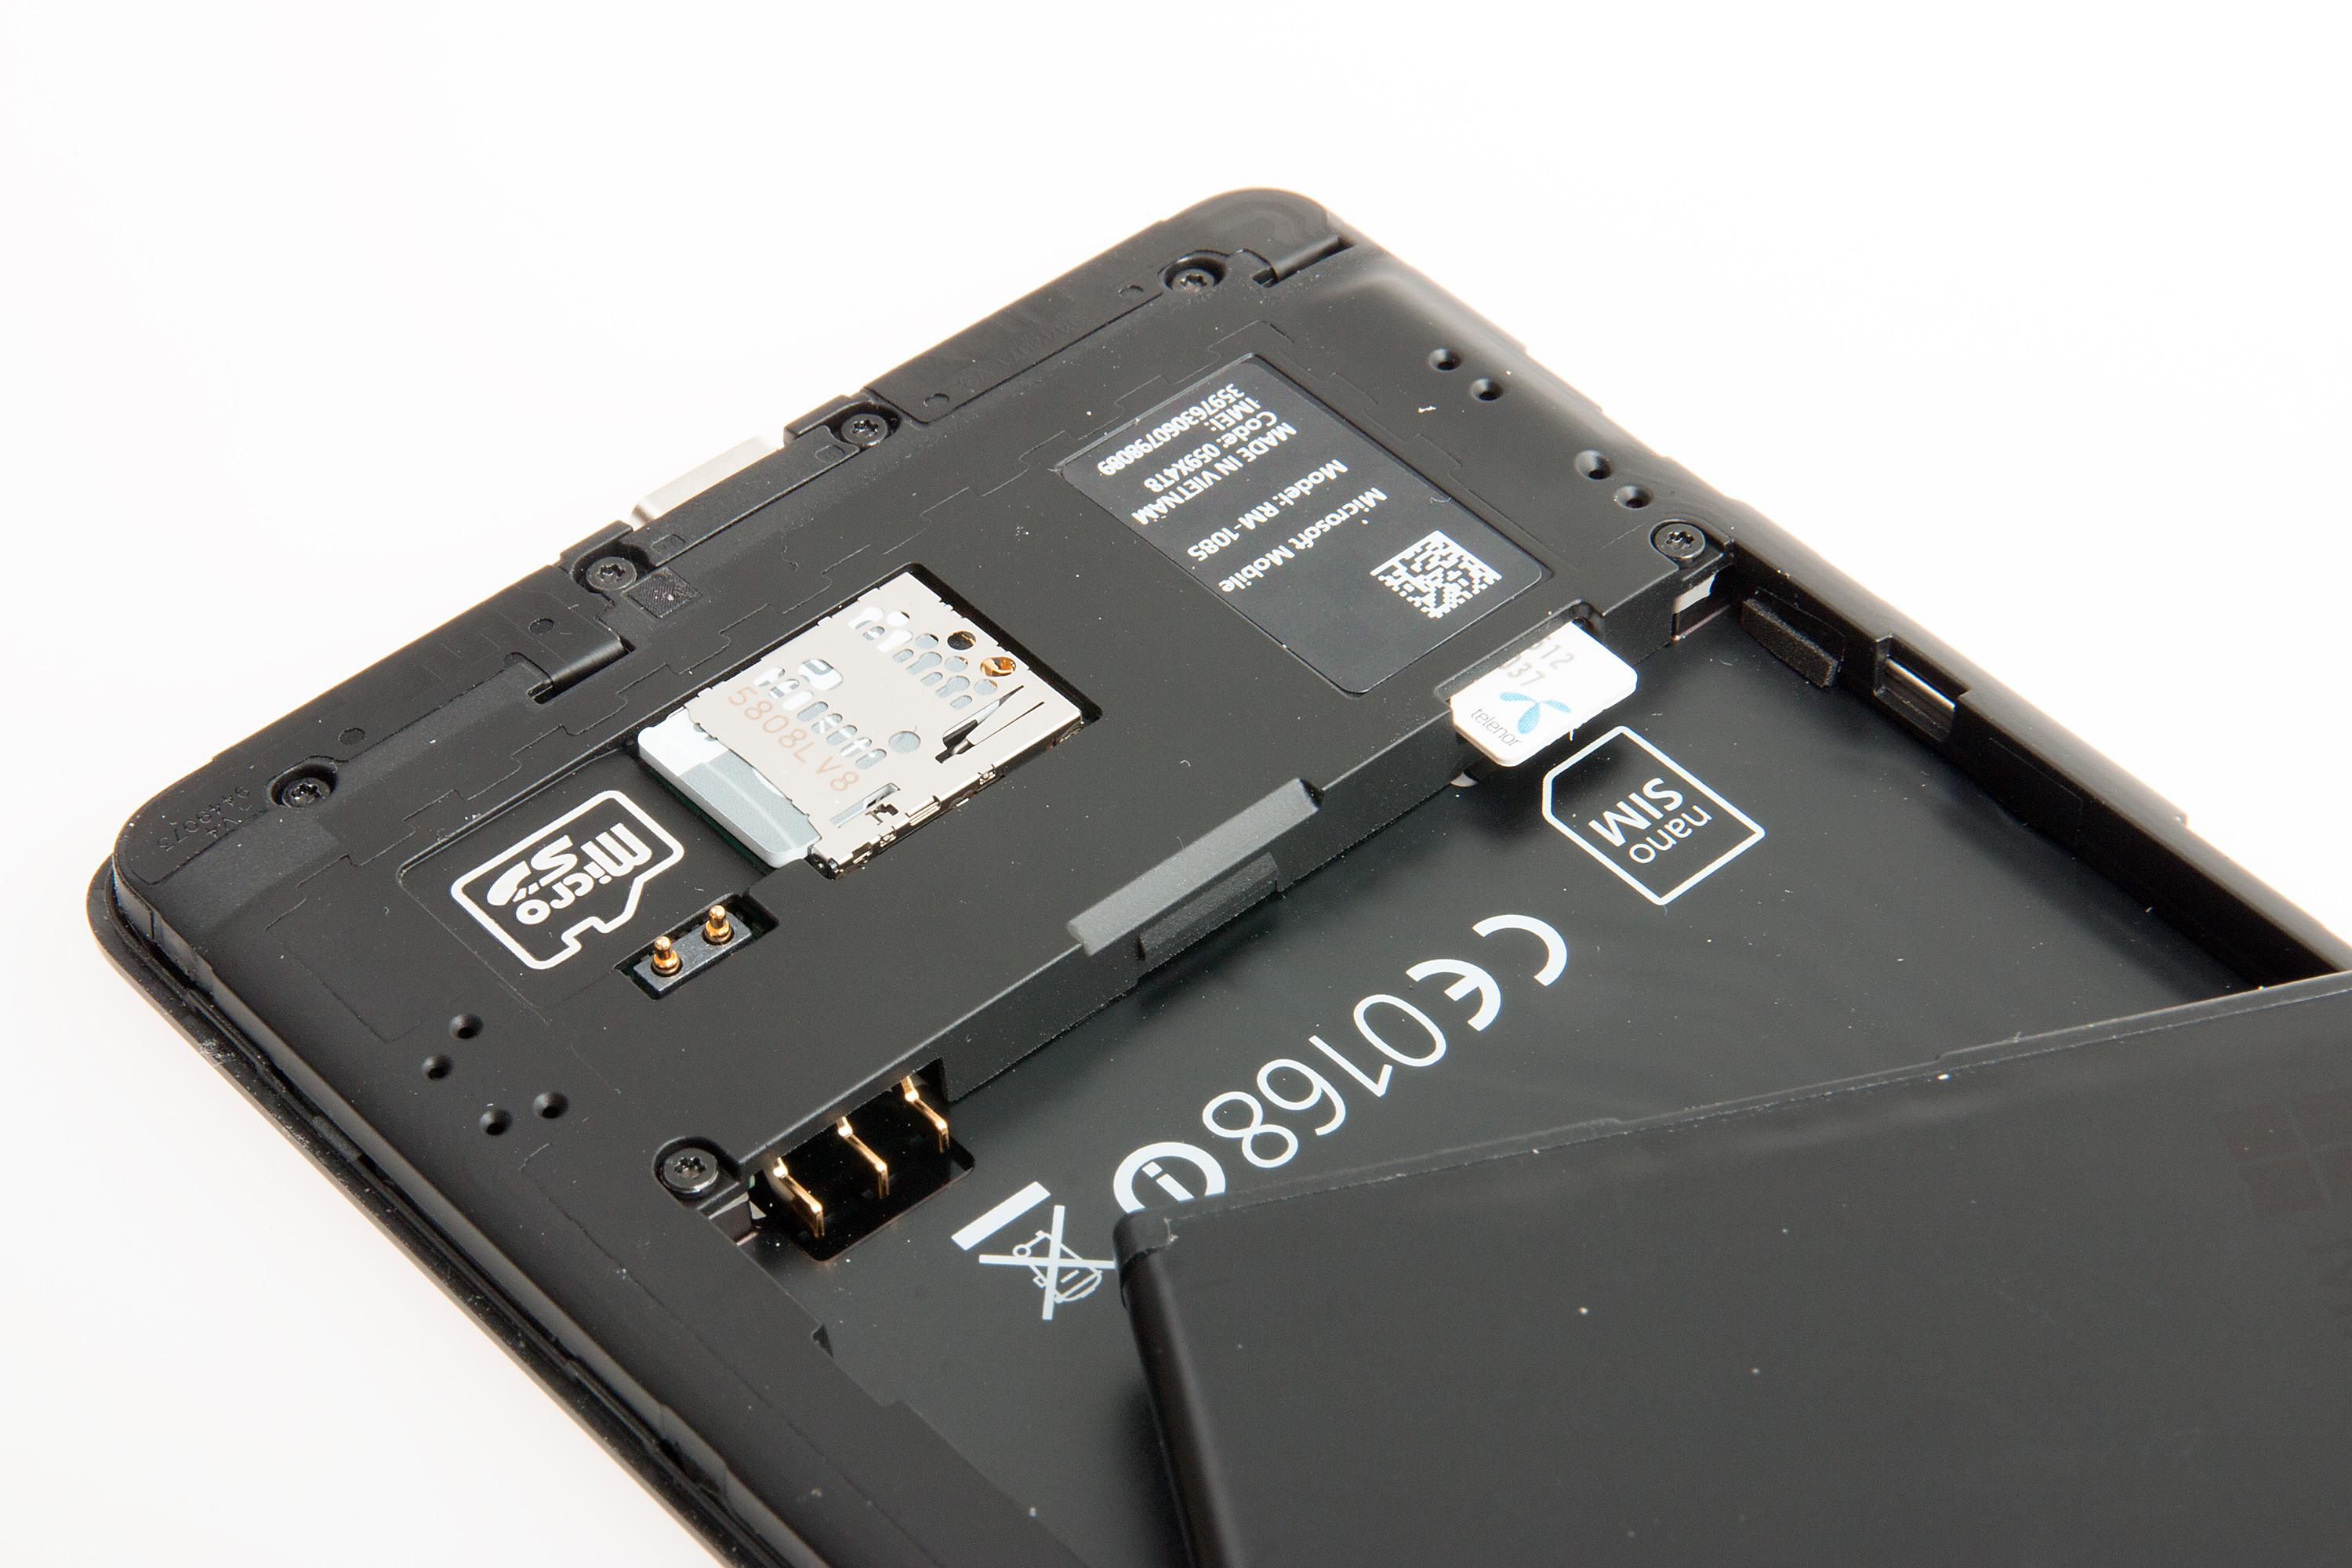 Du må ta ut batteriet for å komme til SIM-kortet, mens MicroSD-kortet er tilgjengelig bare ved å ta av bakdekselet. Foto: Kurt Lekanger, Tek.no